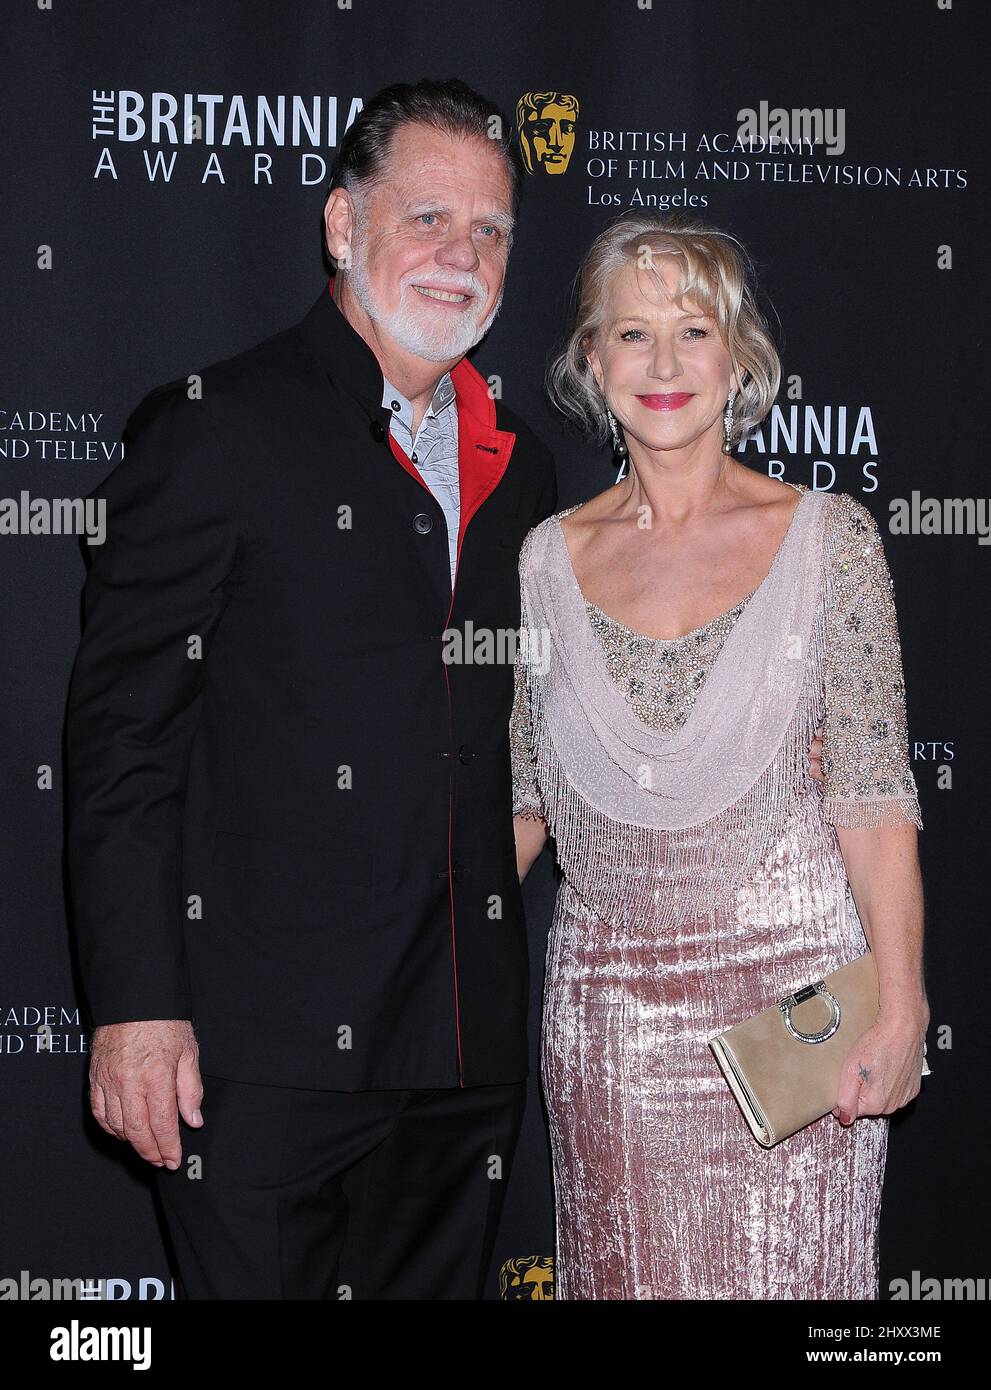 Taylor Hackford ed Helen Mirren partecipano al BAFTA Los Angeles 2011 Britannia Awards, che si tiene al Beverly Hilton Hotel di Los Angeles, USA. Foto Stock